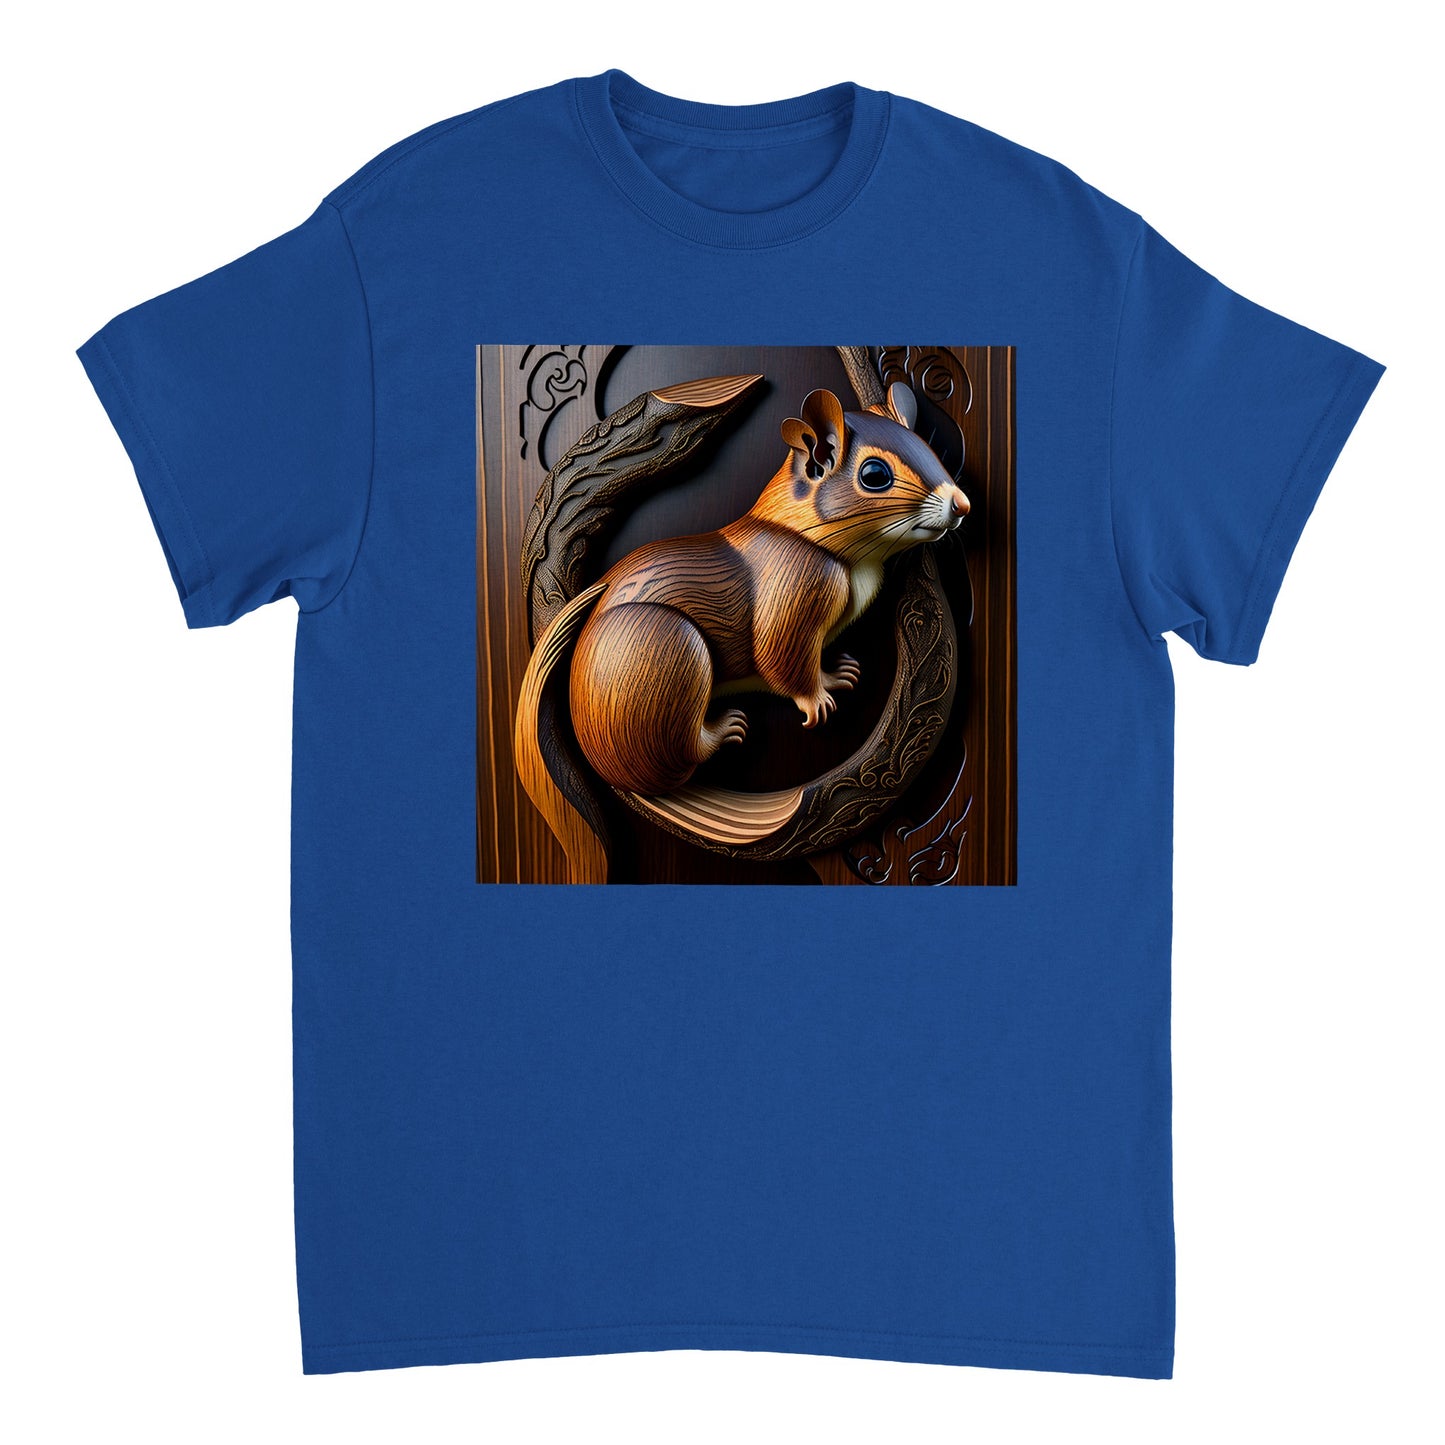 3D Wooden Animal Art - Heavyweight Unisex Crewneck T-shirt 51